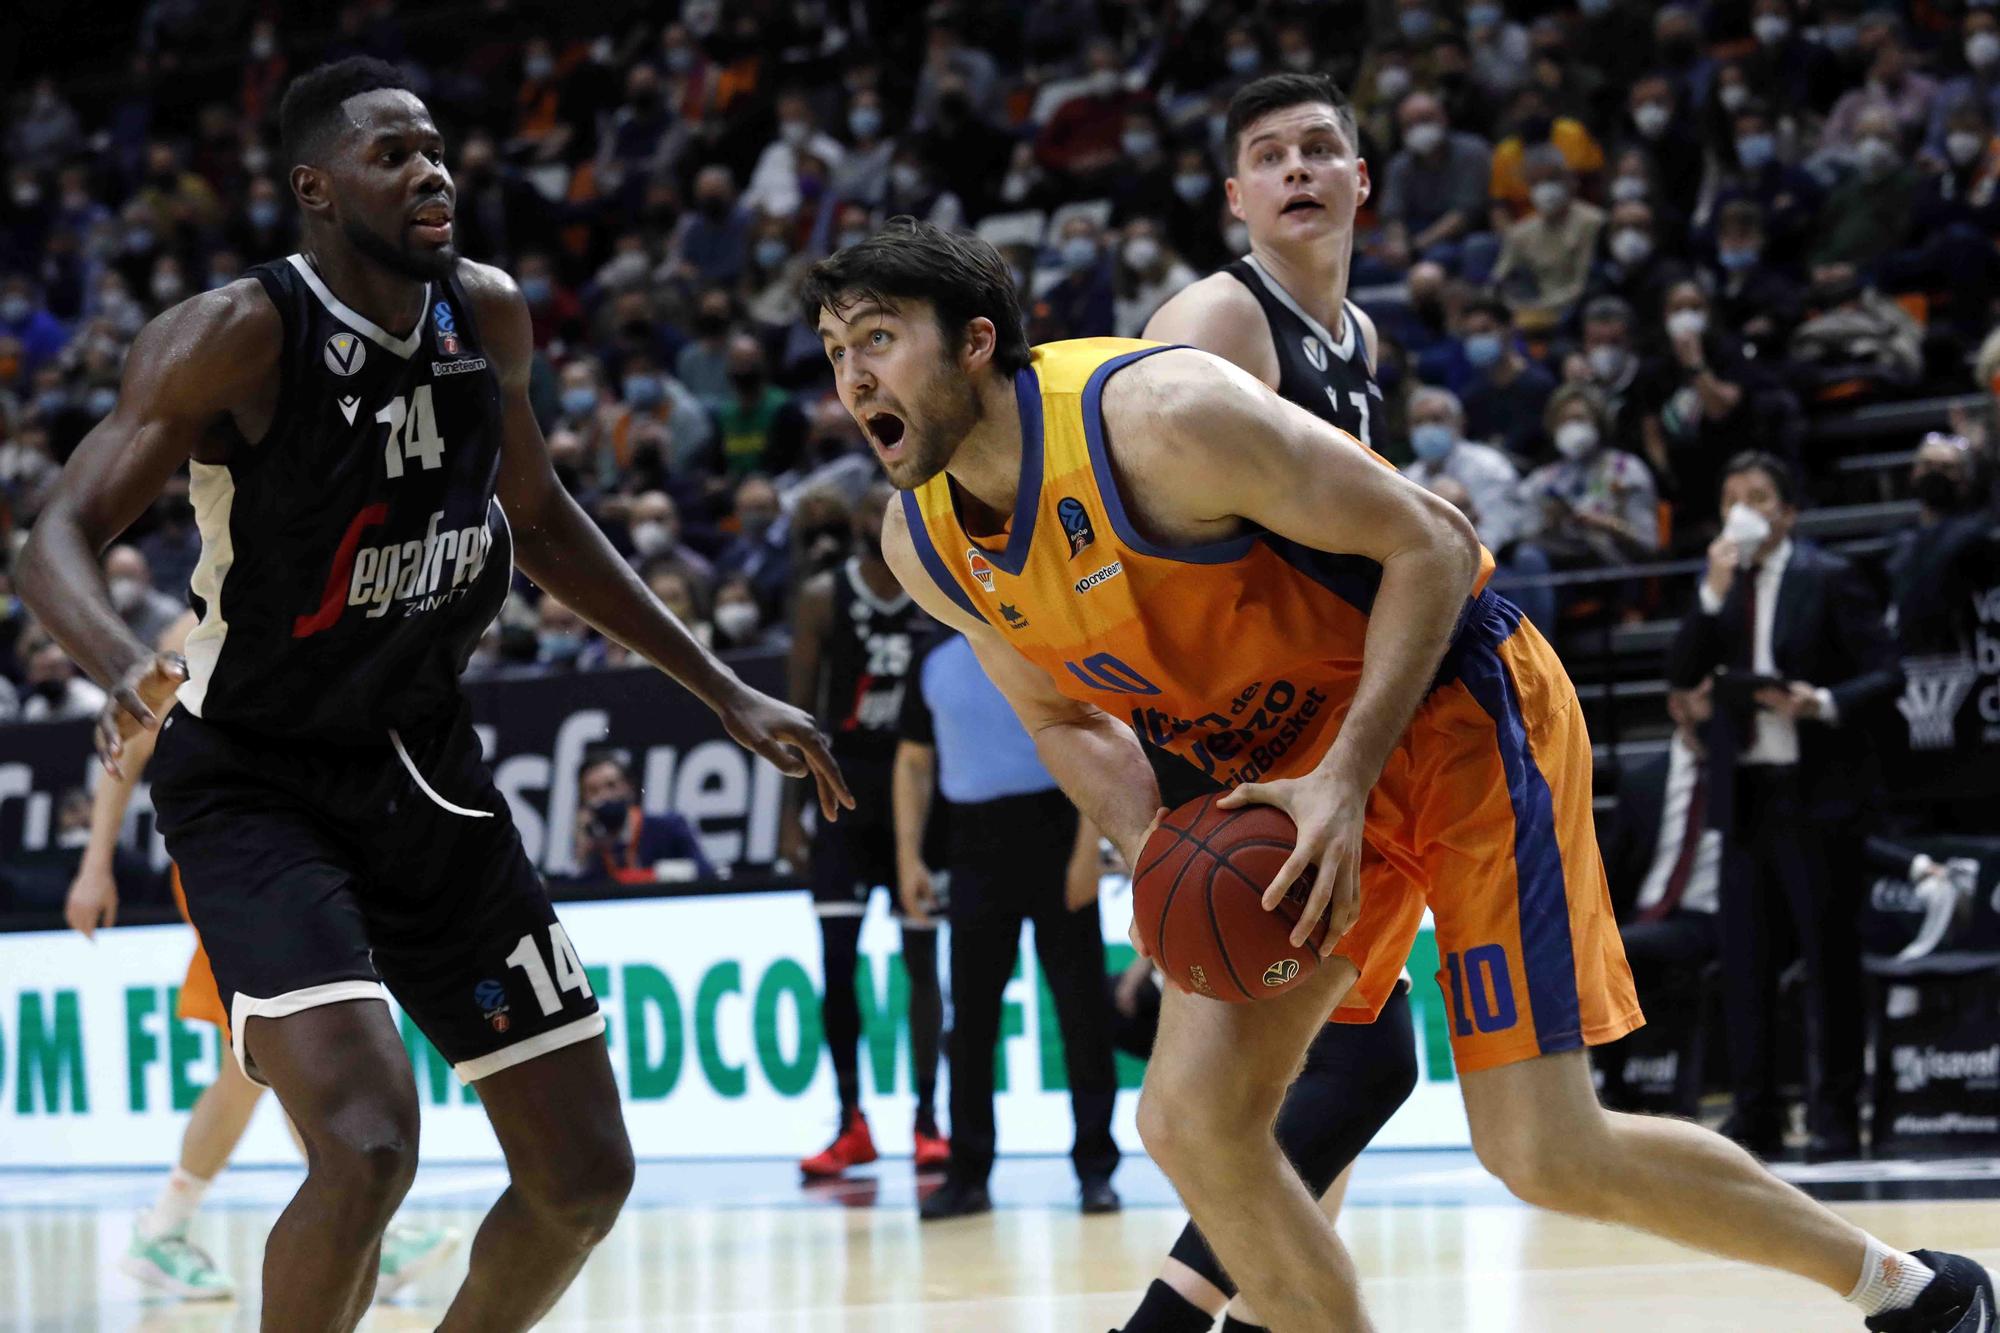 Partido de EuroCup Valencia Basket- Virtus Bolonia